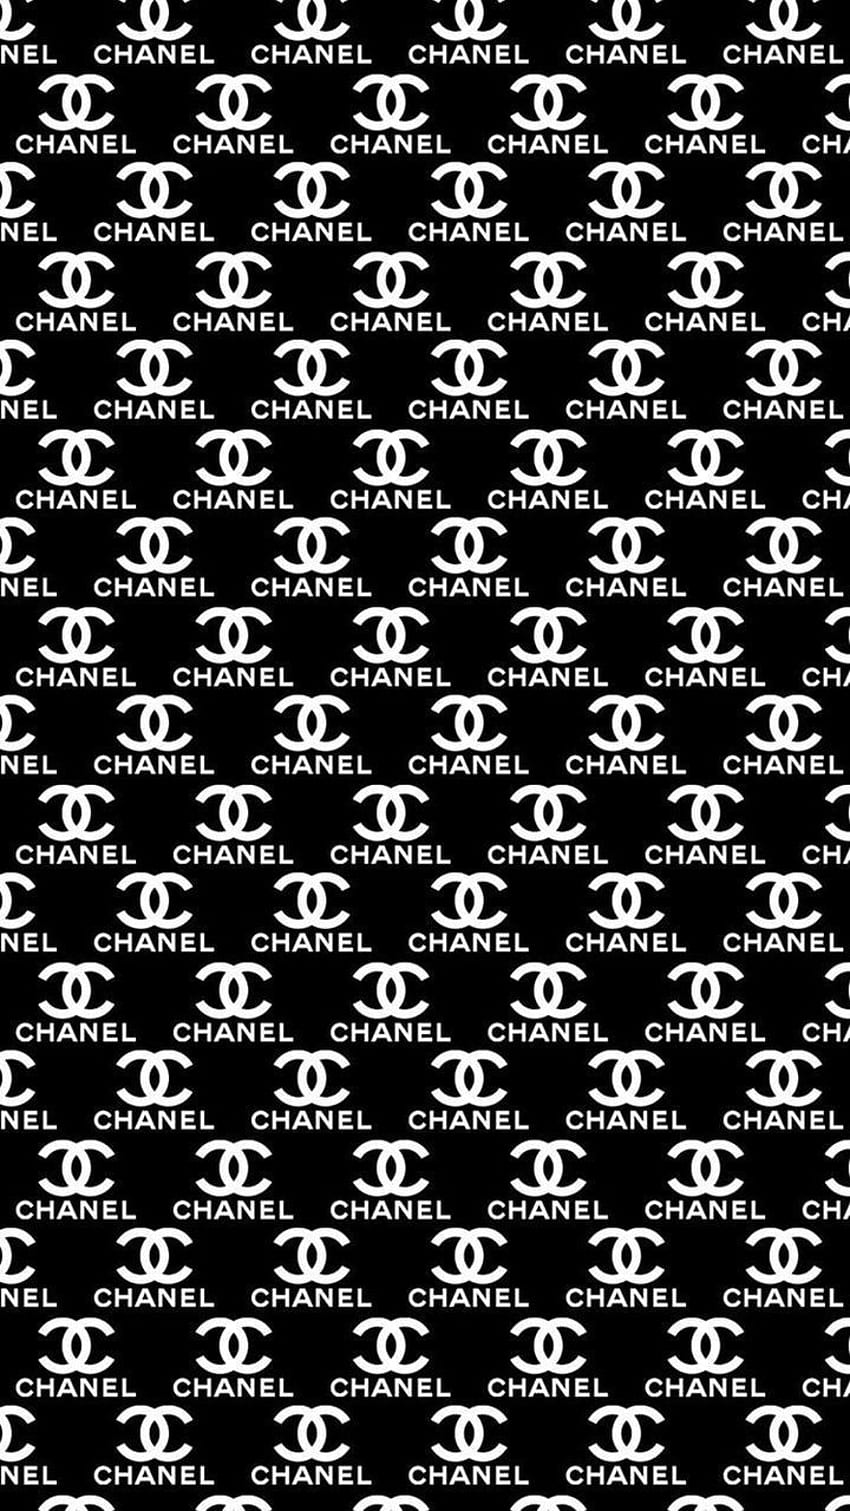 Logo Chanel wallpaper ponsel HD